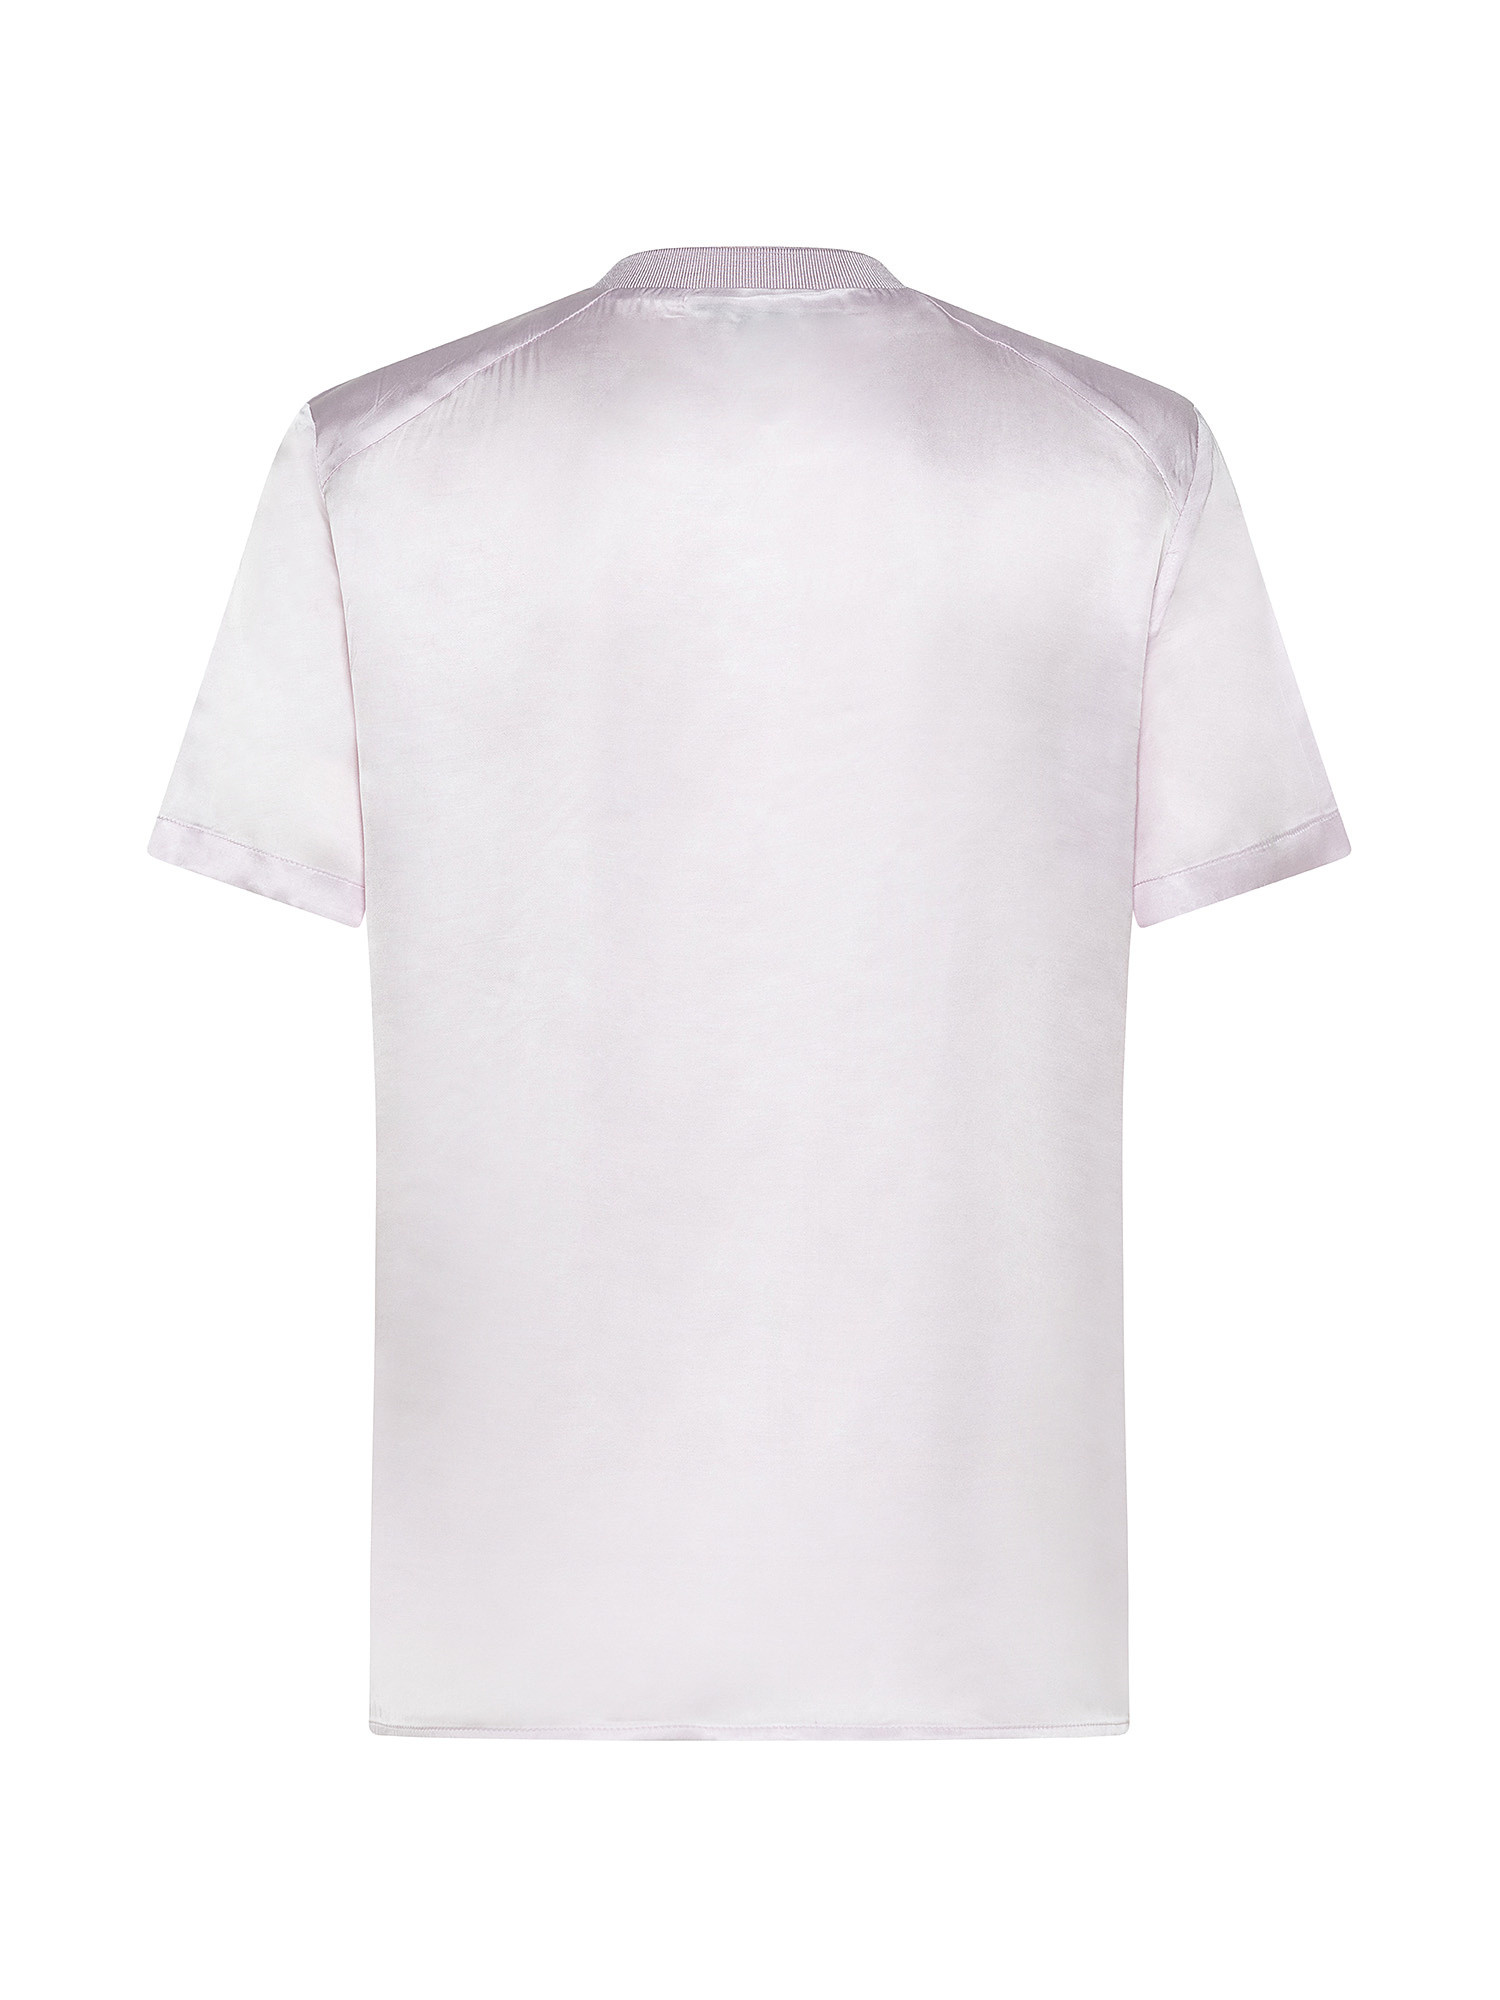 Short-sleeved silk-effect blouse, Light Pink, large image number 1